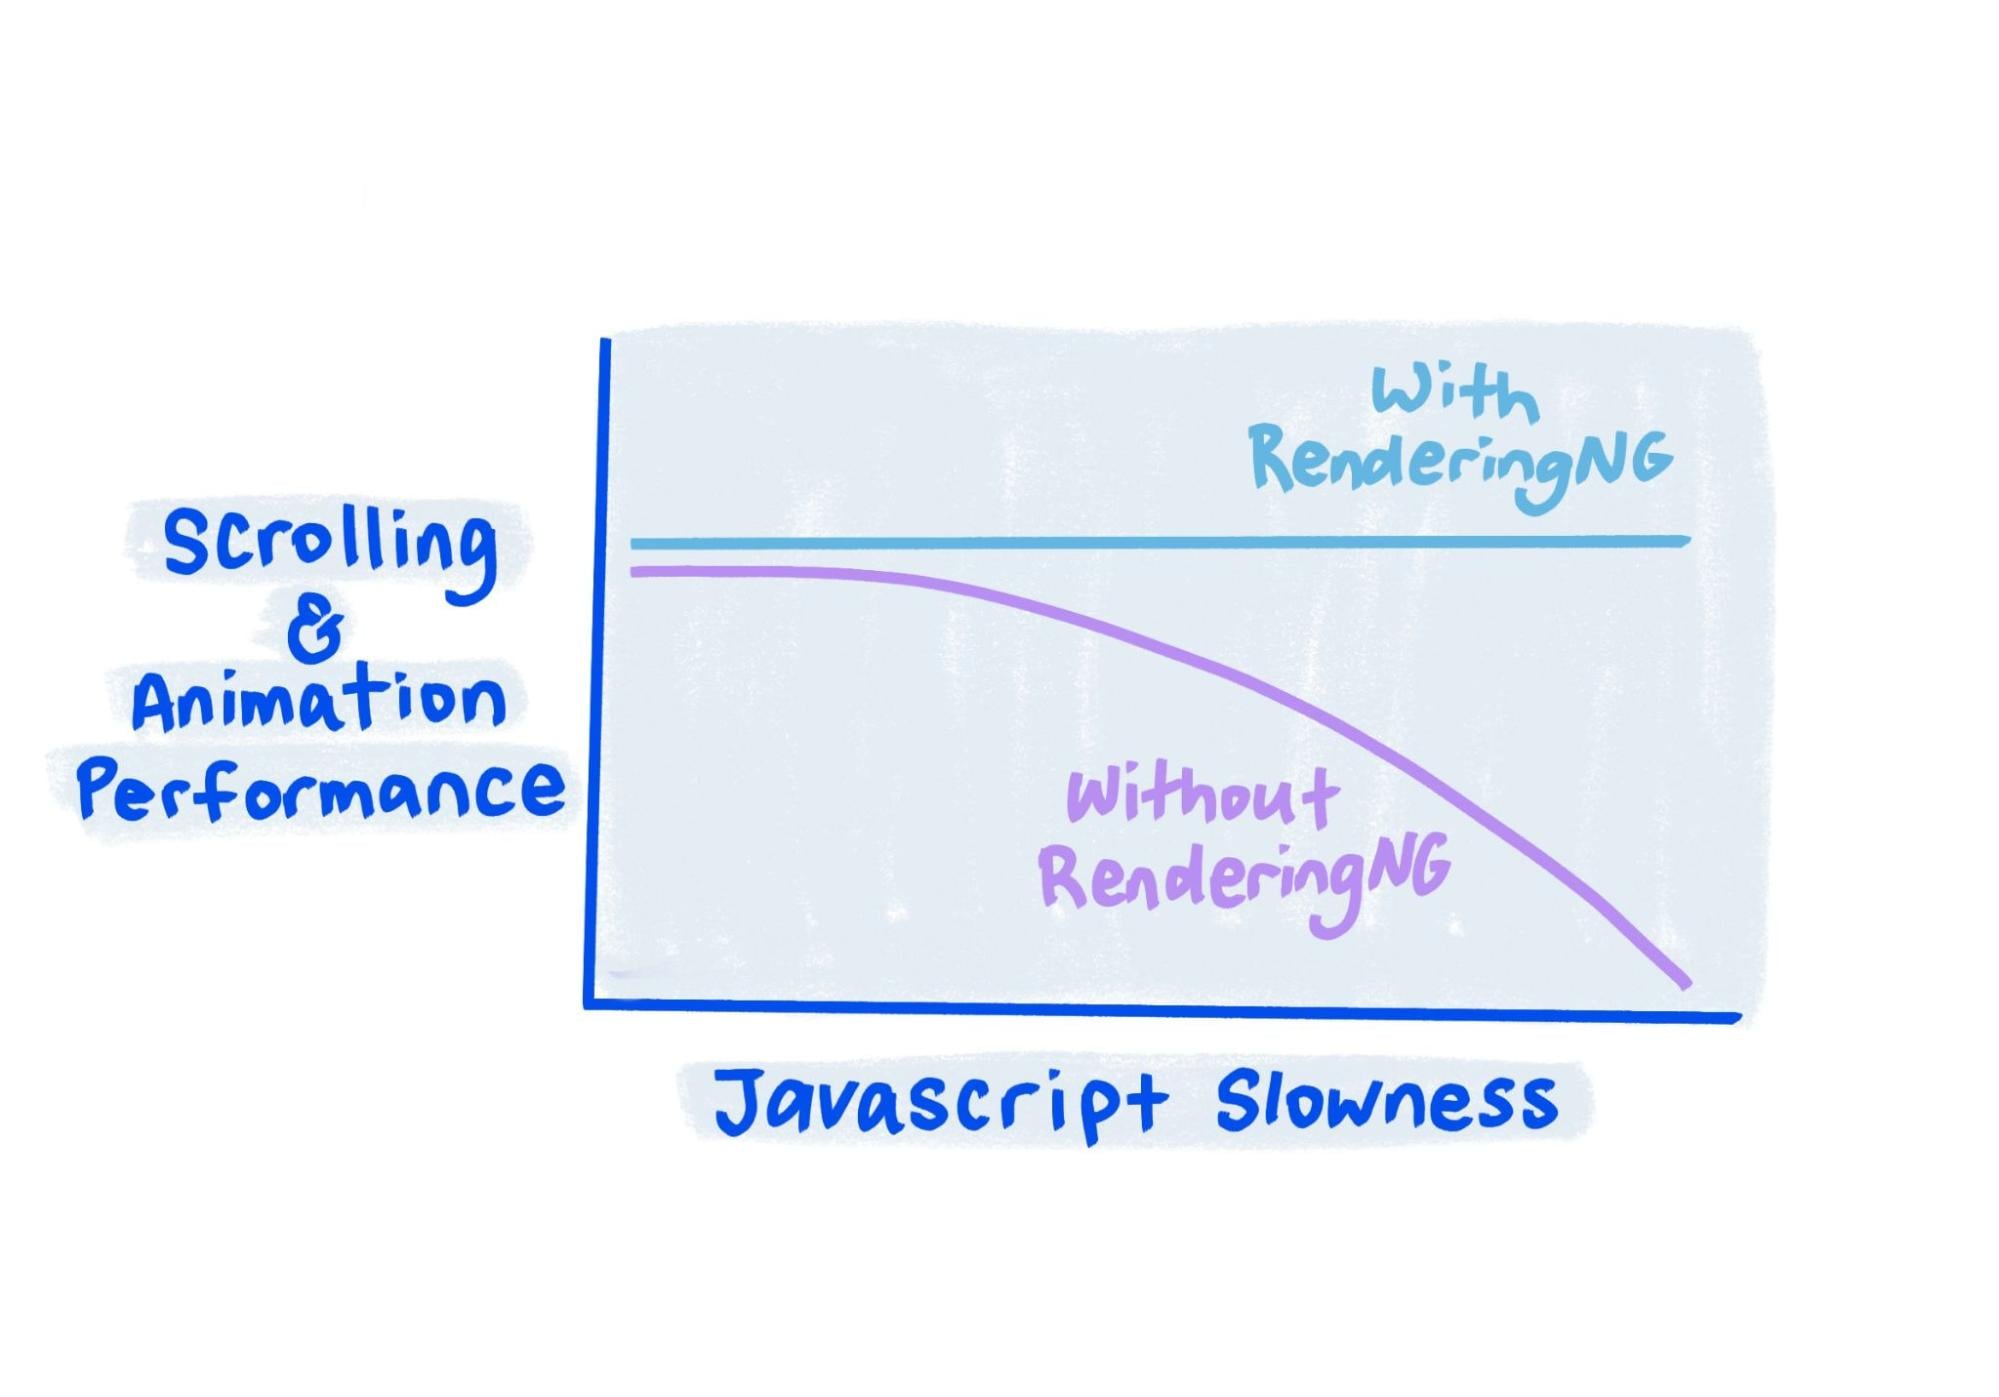 草圖顯示，即使 JavaScript 速度非常慢，RendingNG 的效能仍保持穩定；